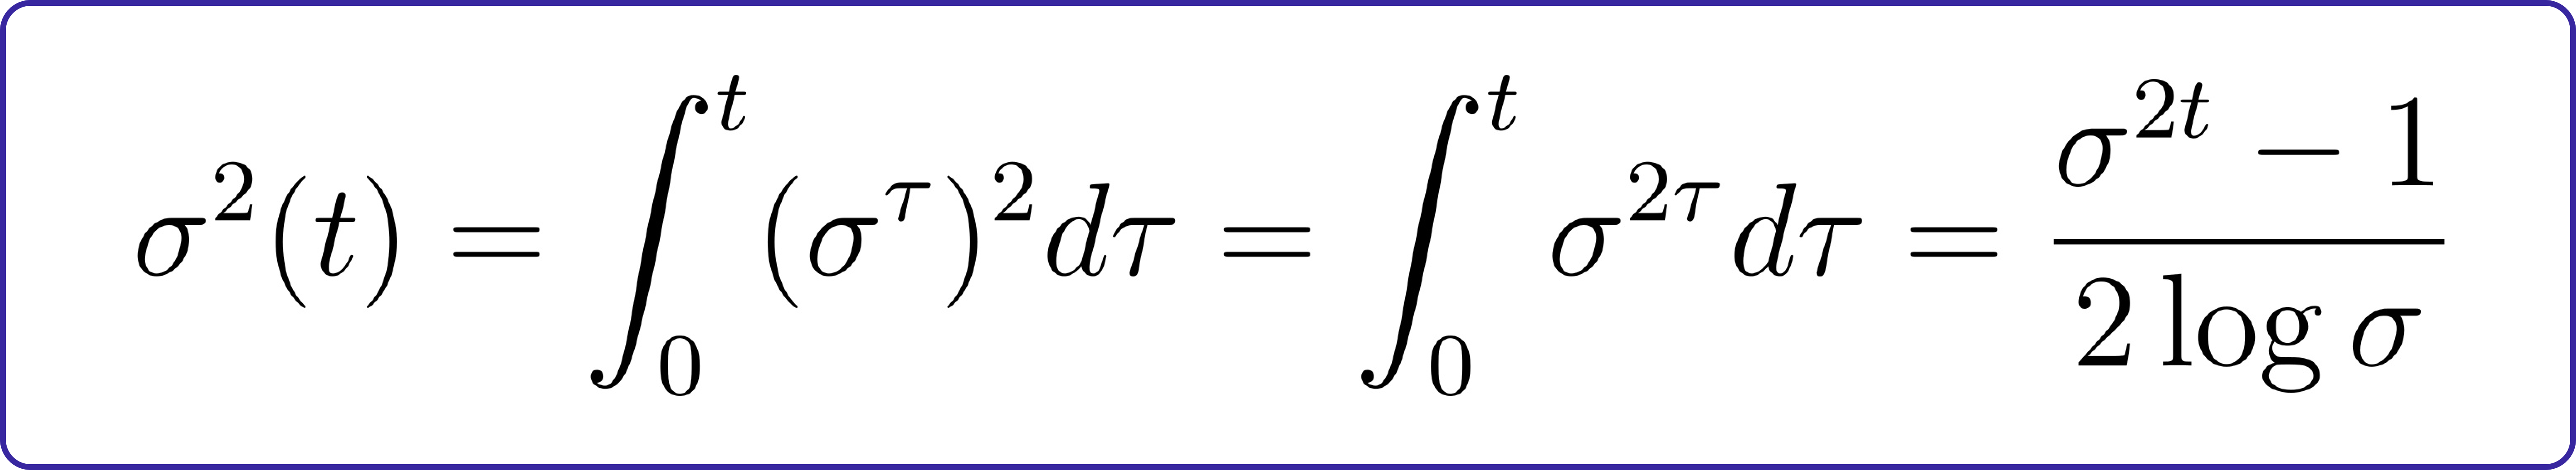 marginal standard deviation equation